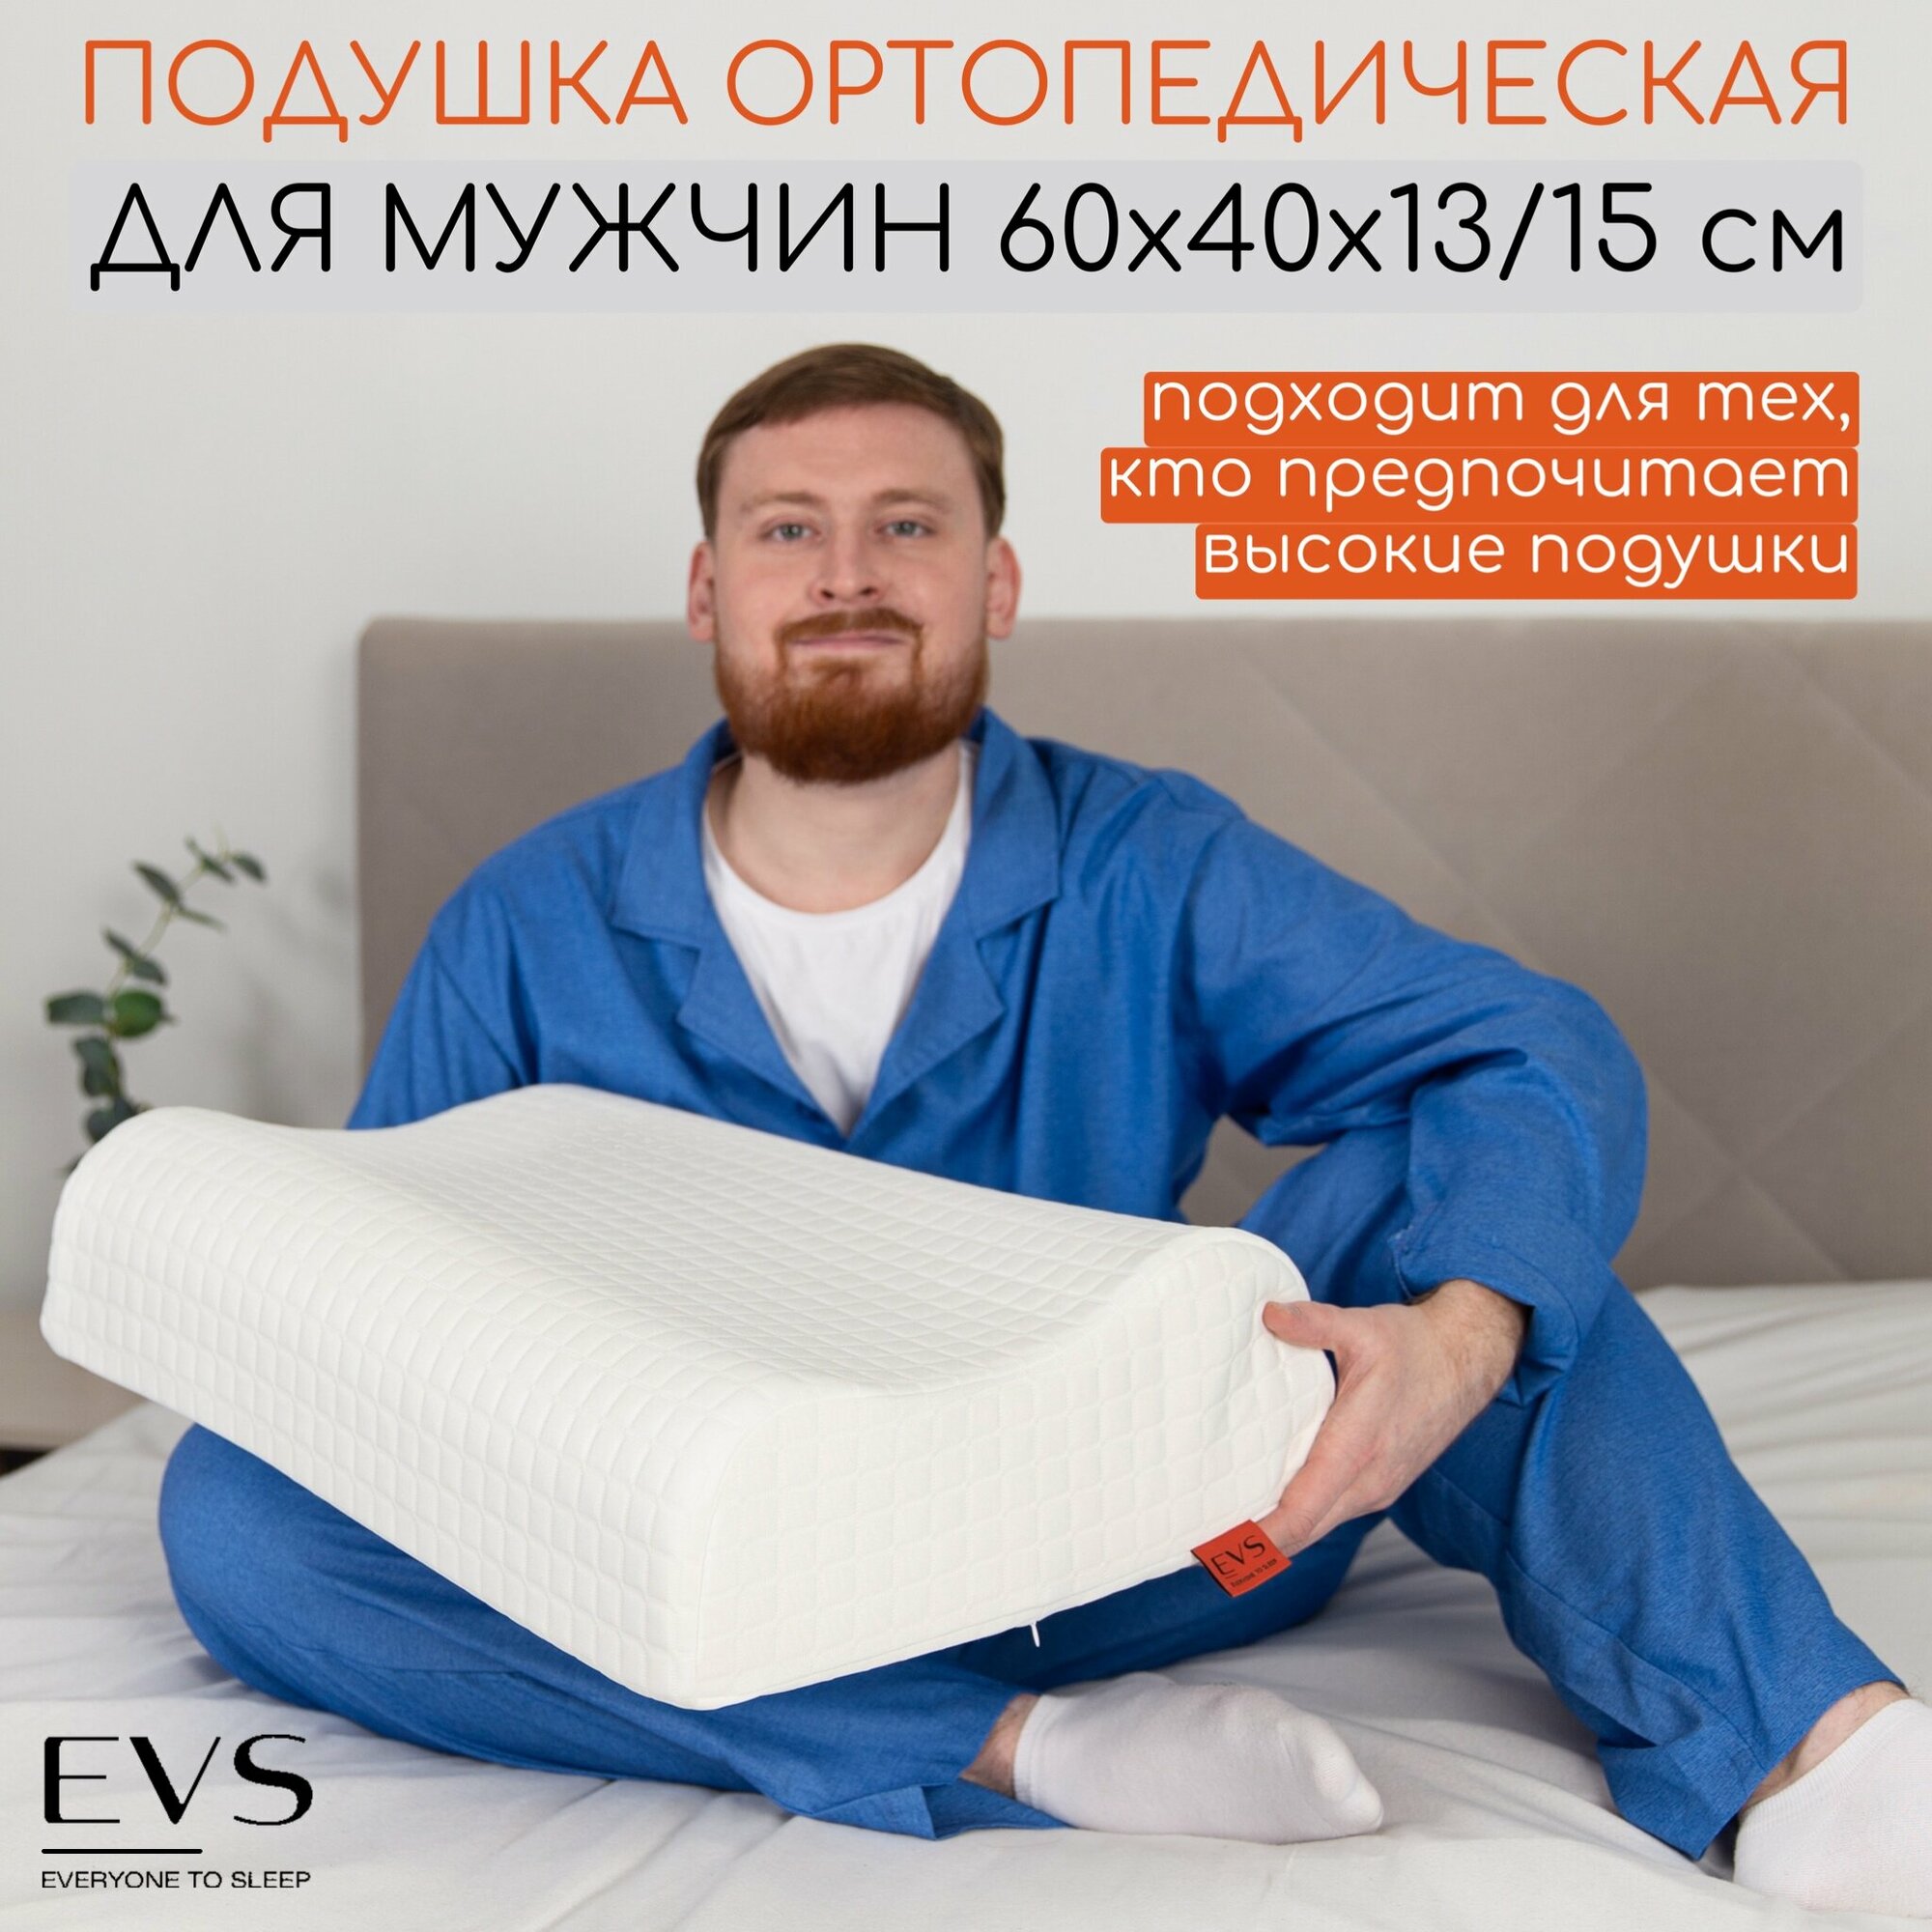 Подушка ортопедическая анатомическая для сна с эффектом памяти подушка 50х70 для взрослых